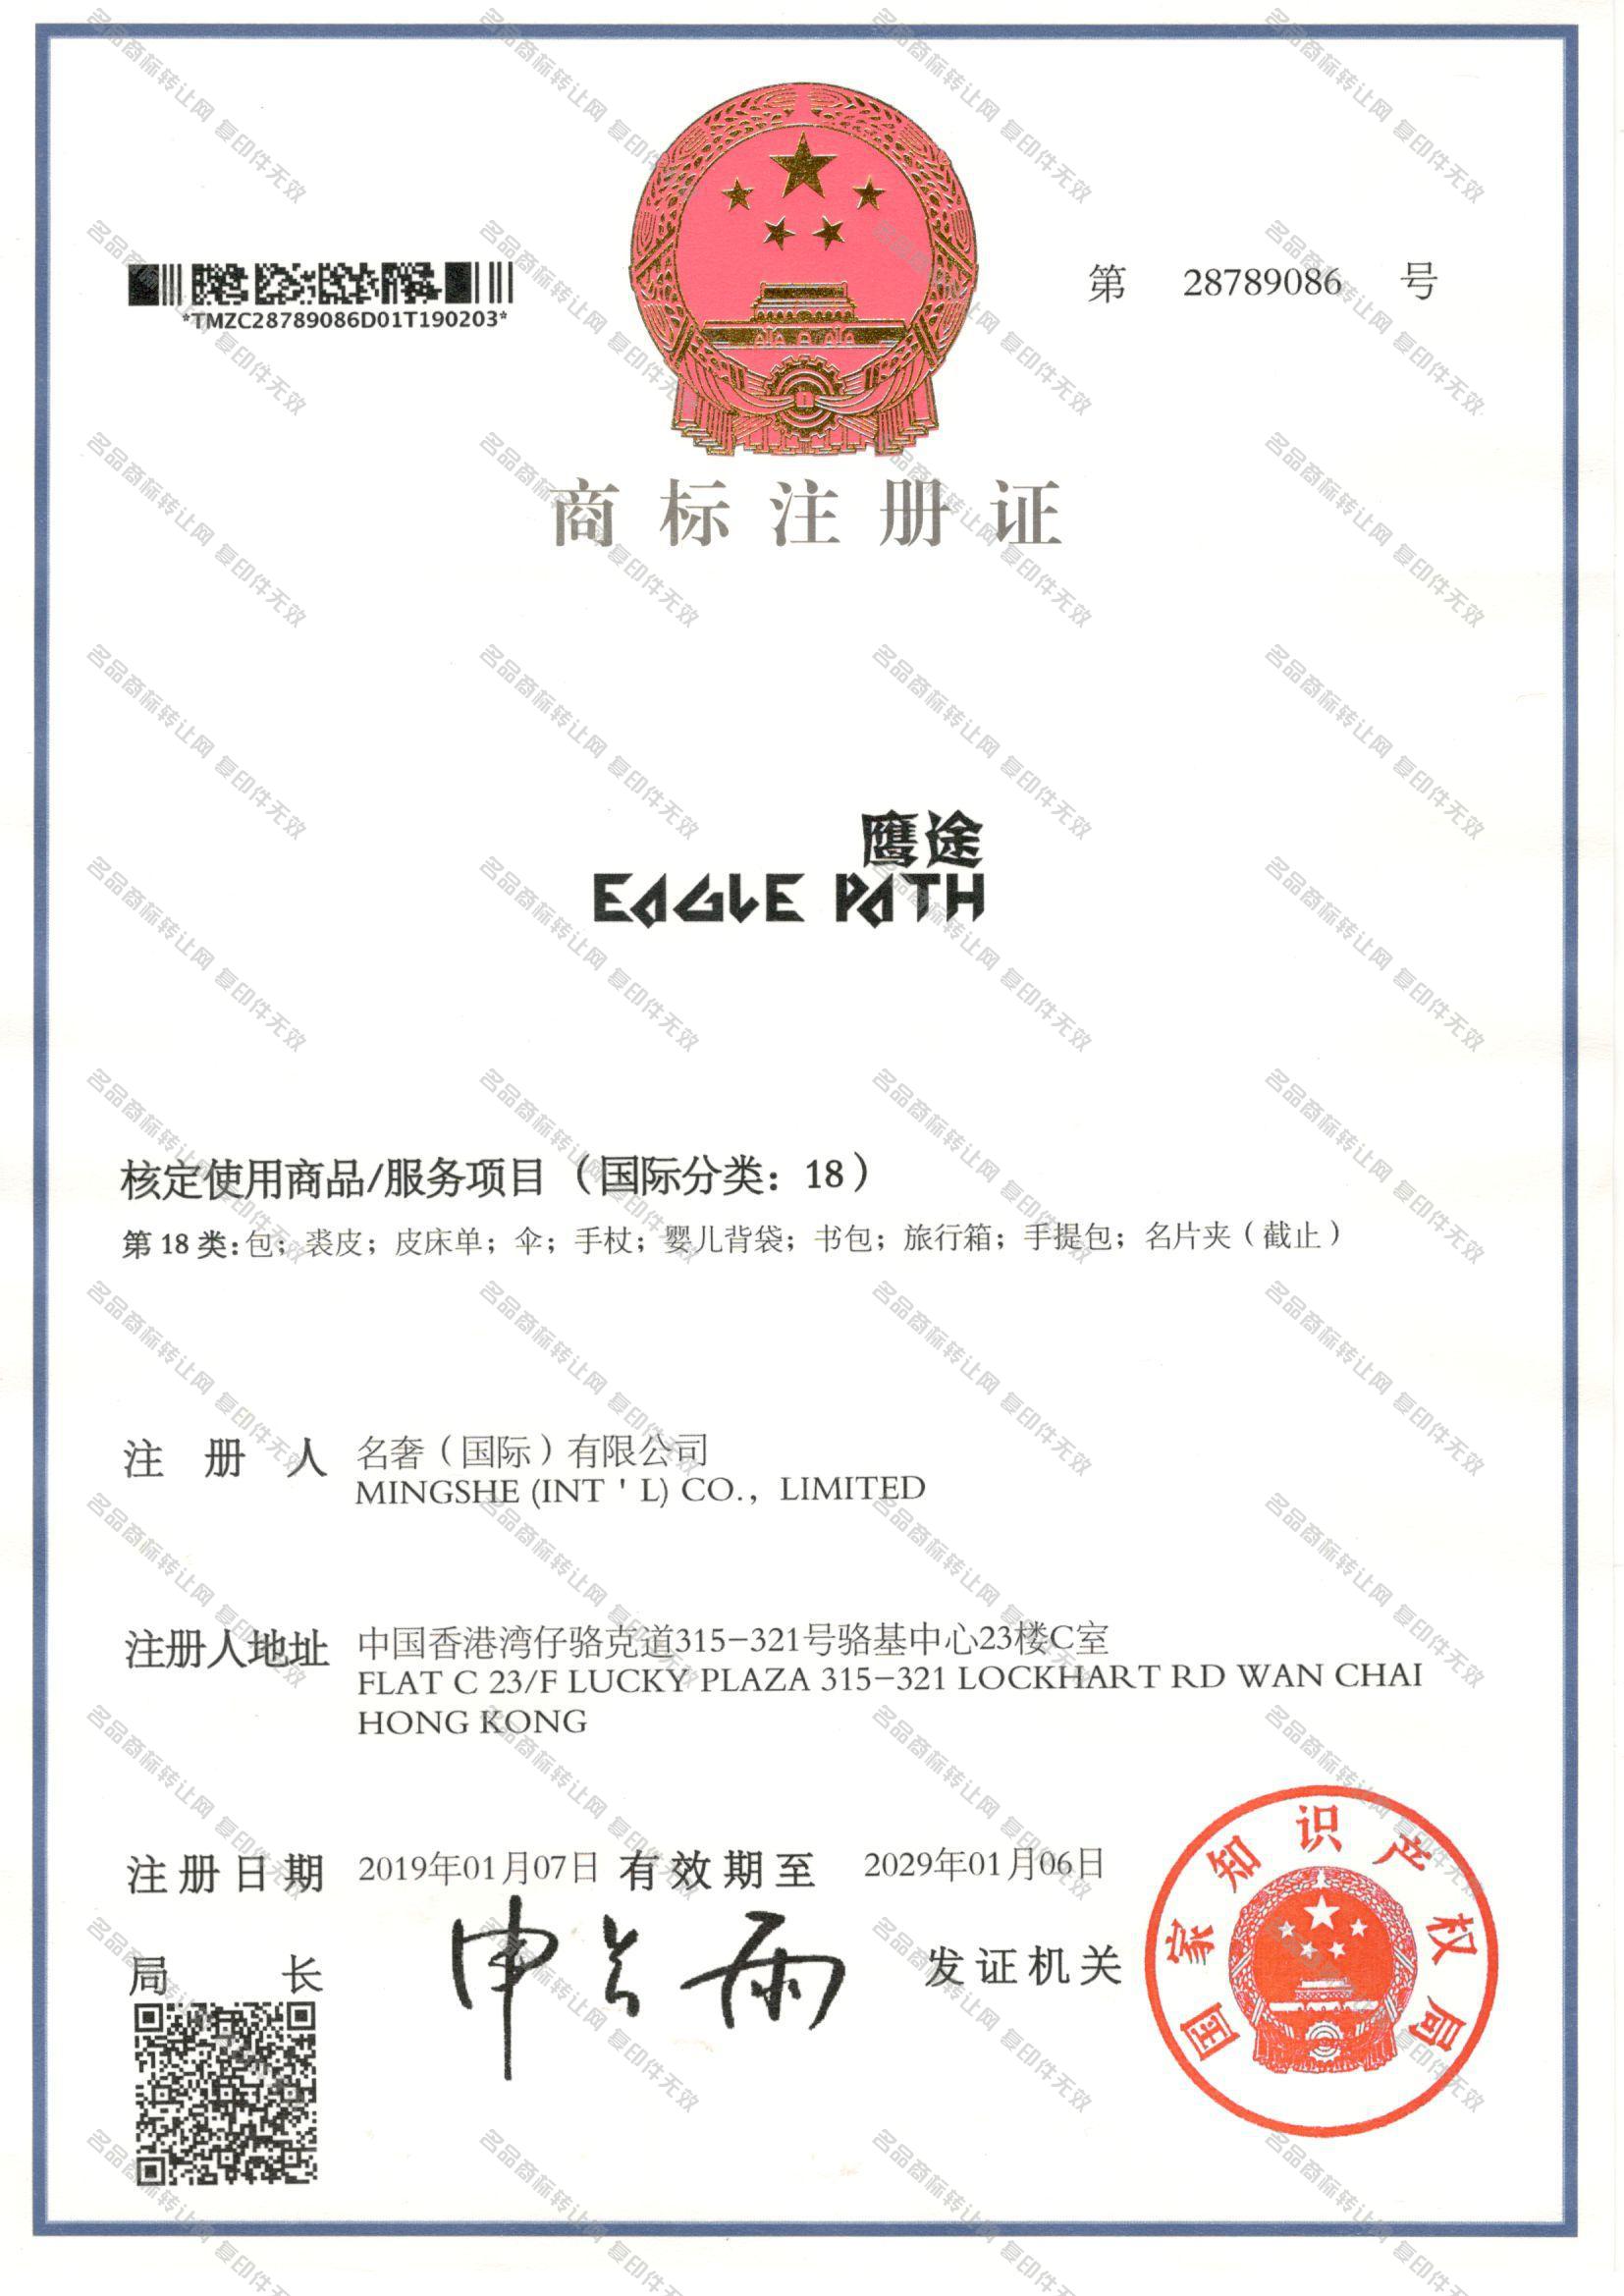 鹰途 EAGLE PATH注册证